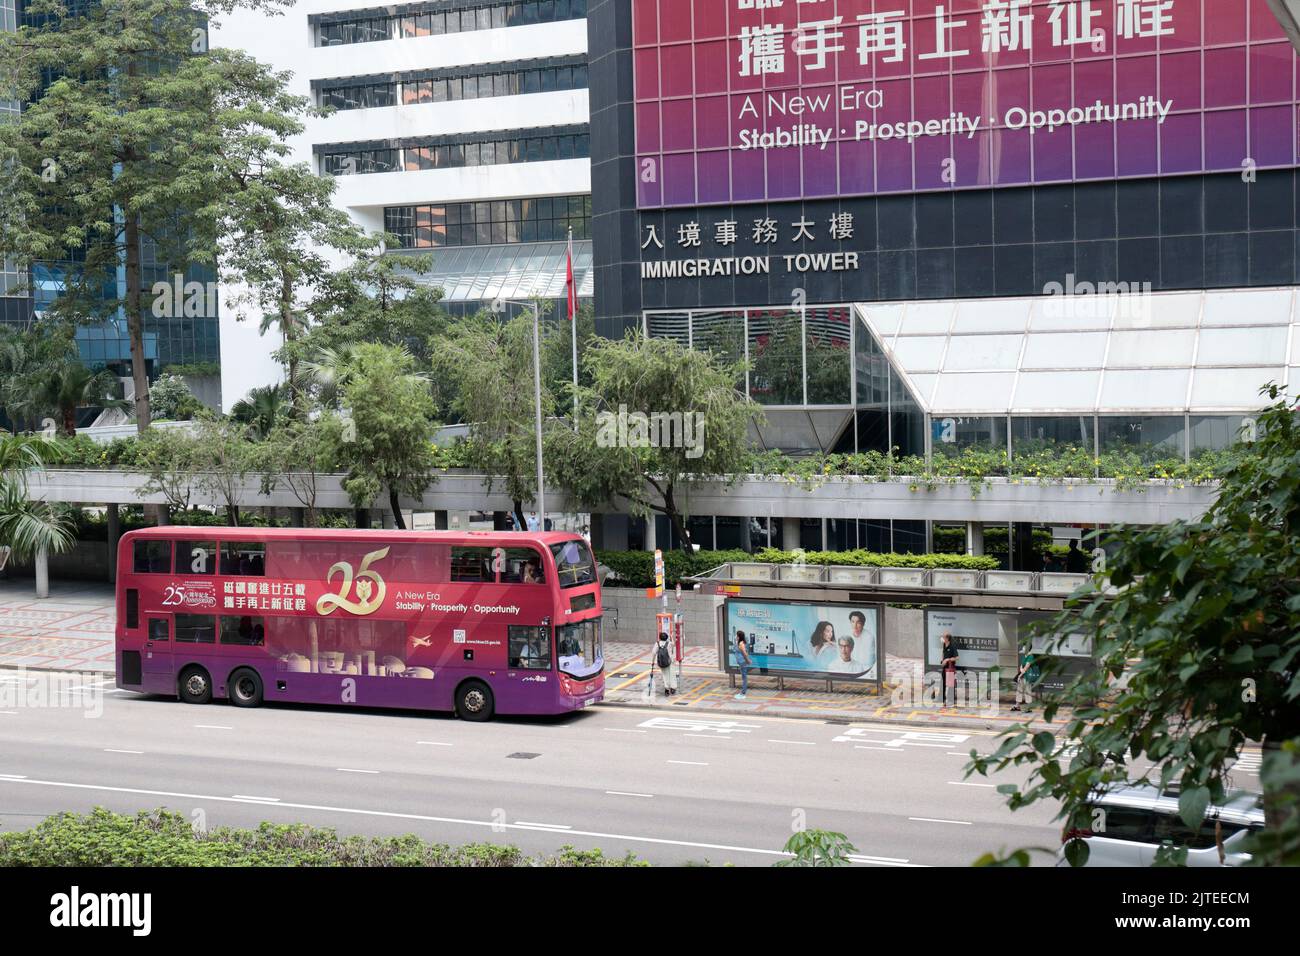 Hong Kong Entrega 25th Aniversario de publicidad, en la Torre de Inmigración y autobús de paso, Connaught Road, Wanchai, Hong Kong Foto de stock